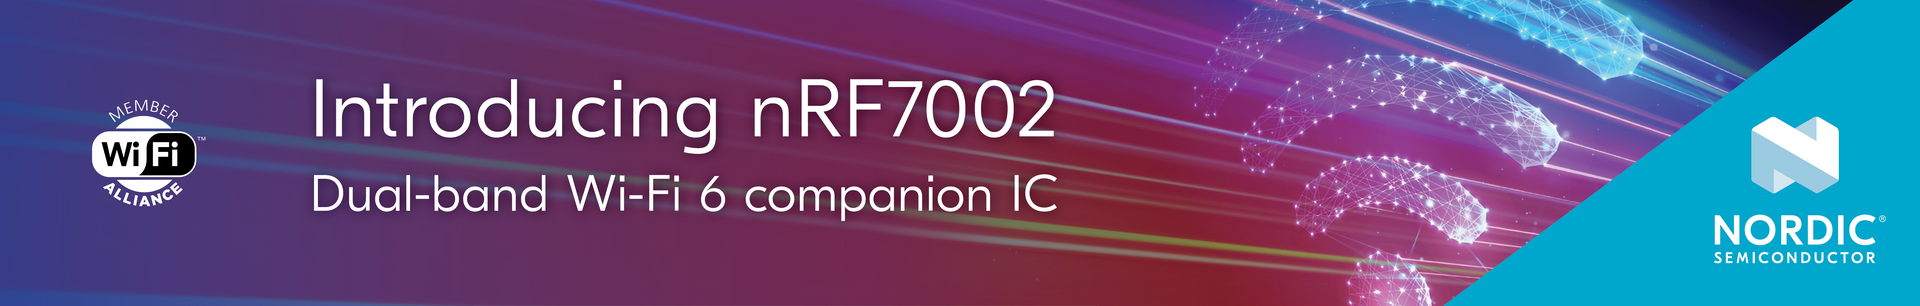 Wi-Fi nRF7002-DK